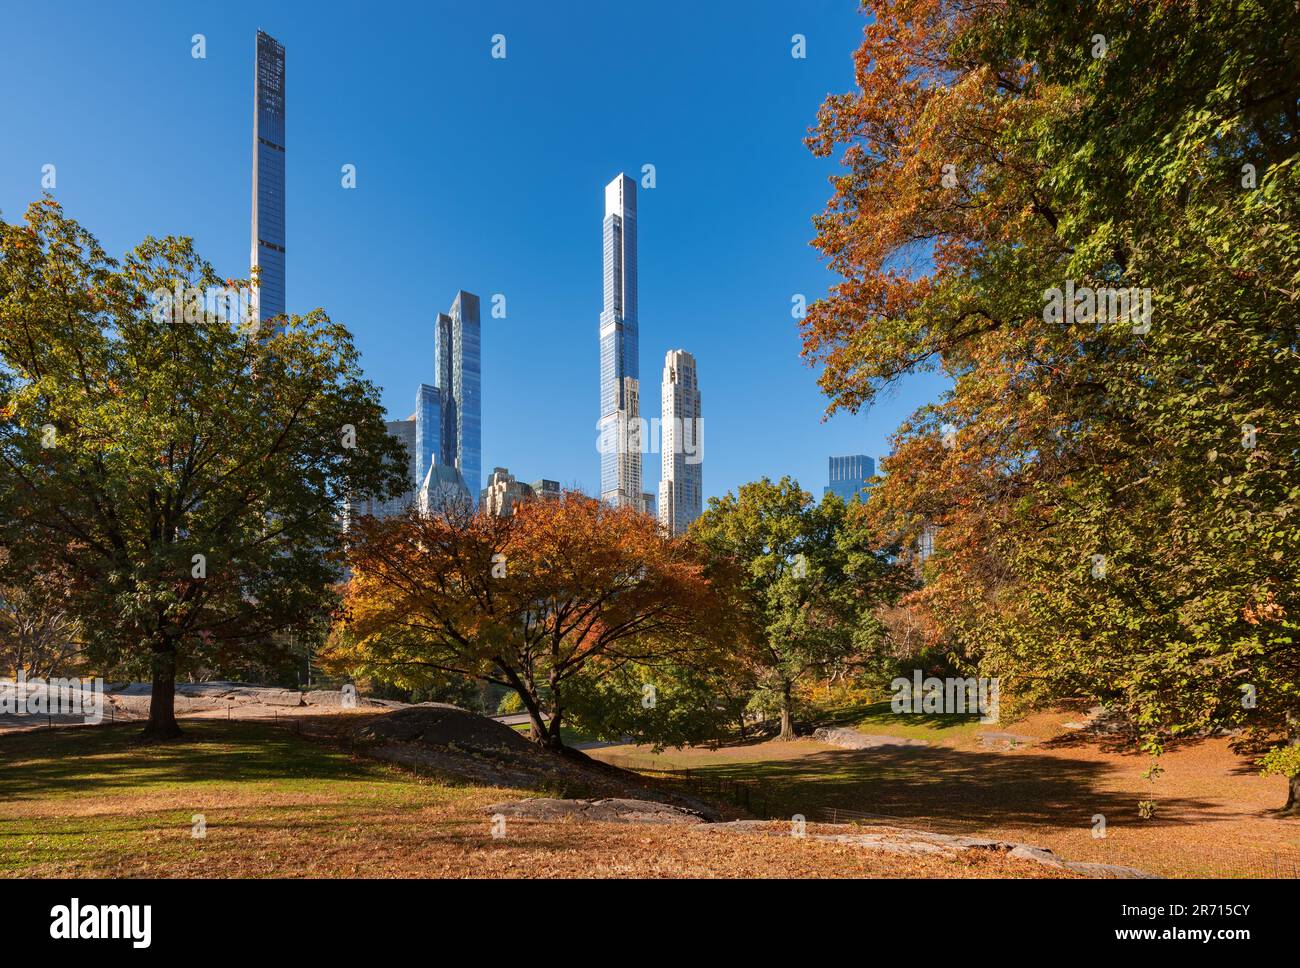 Central Park im Herbst mit Blick auf die superhohen Wolkenkratzer der Milliardärsreihe. Midtown Manhattan, New York City Stockfoto